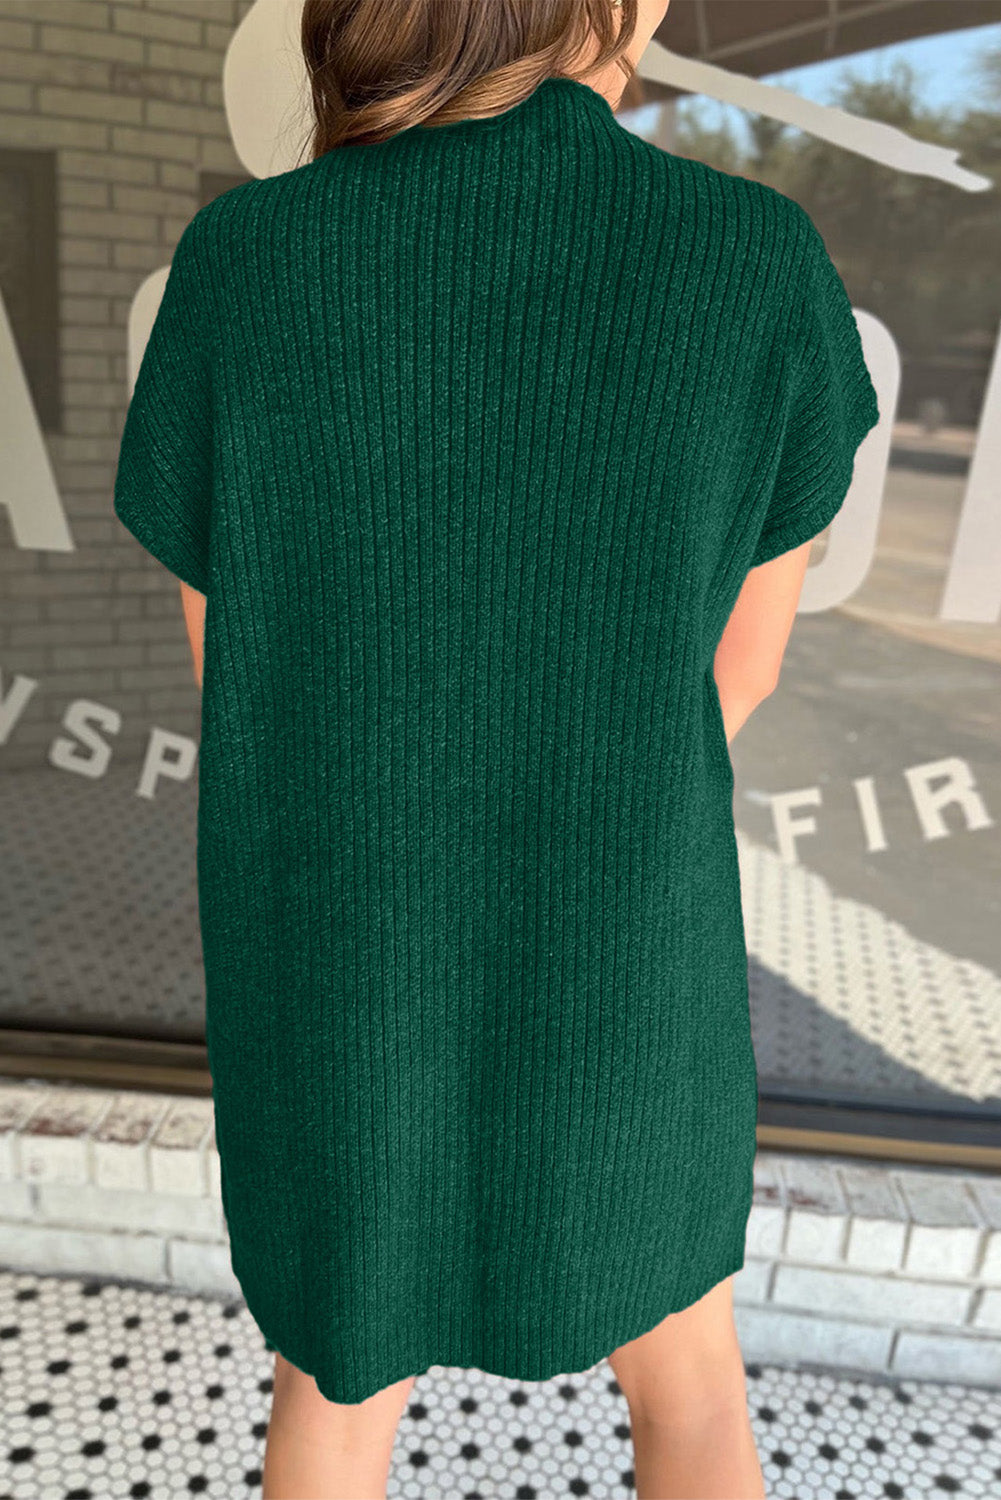 Abito maglione a maniche corte in maglia a coste con tasca applicata verde nerastro